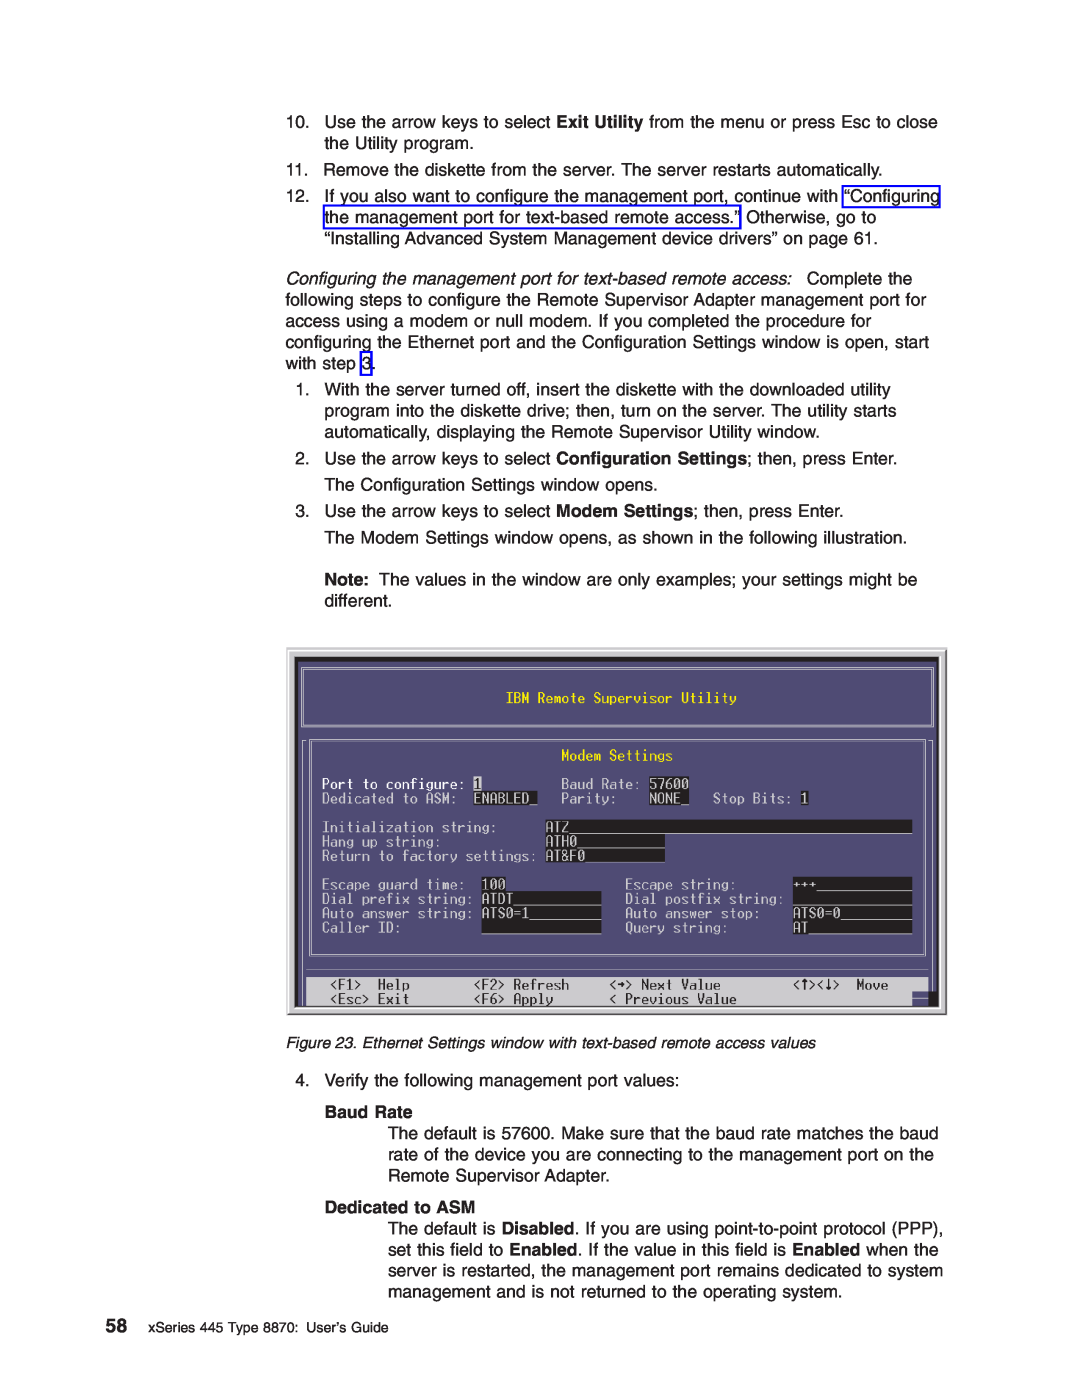 IBM manual Baud Rate, Dedicated to ASM, xSeries 445 Type 8870 User’s Guide 